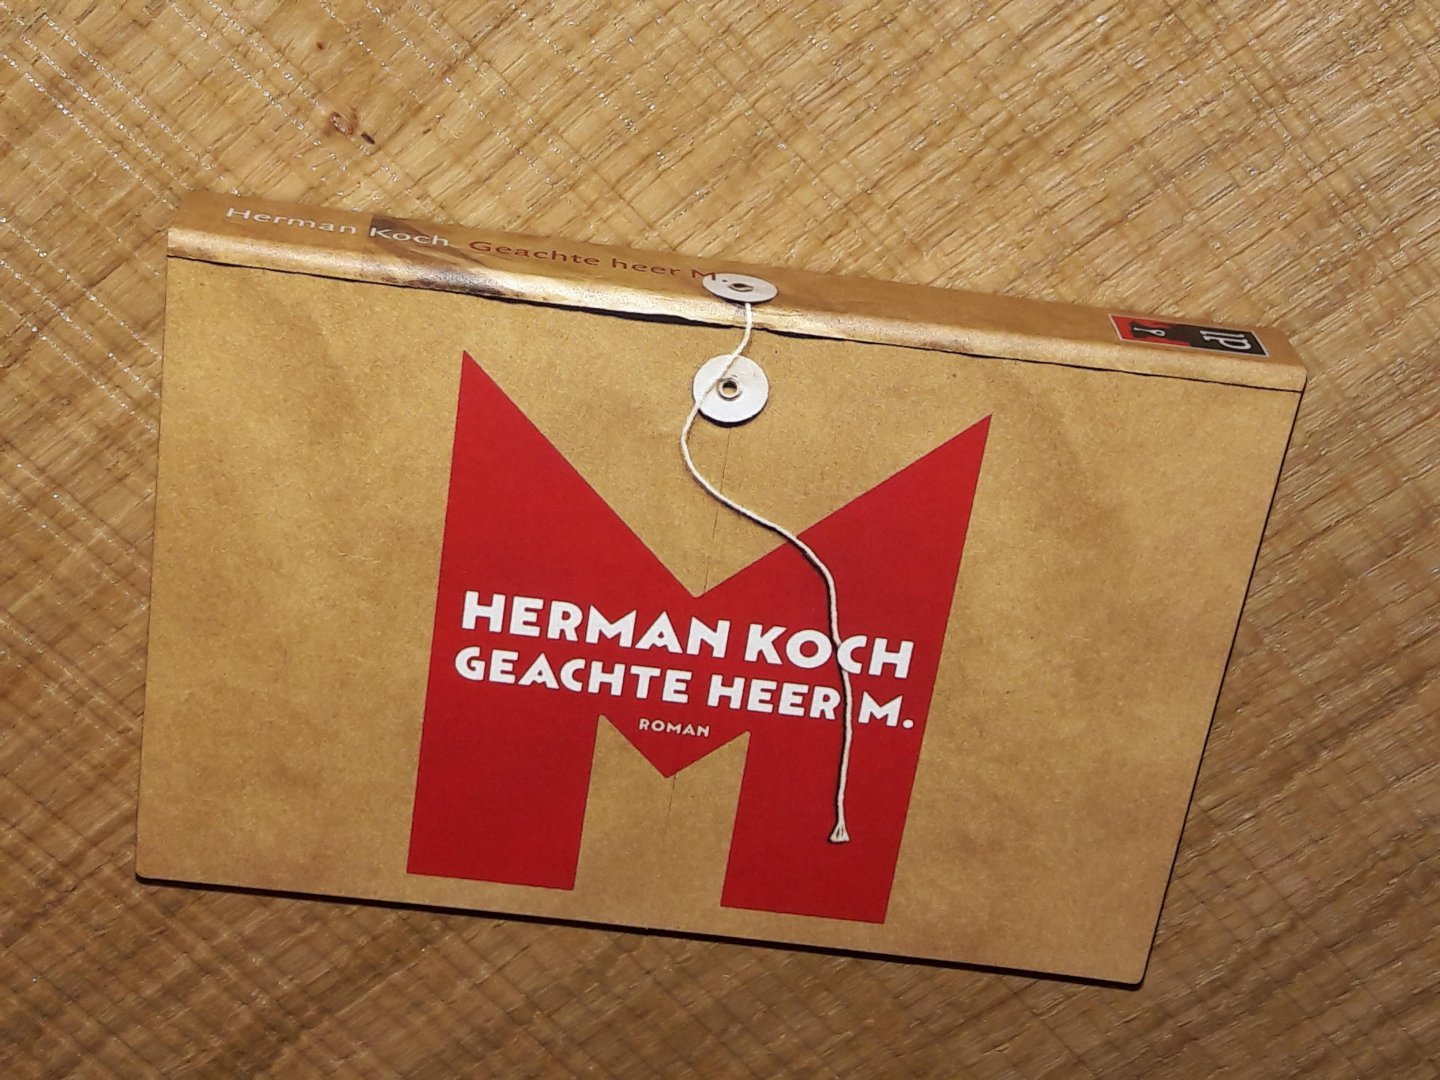 Koch, Herman - Geachte heer M.